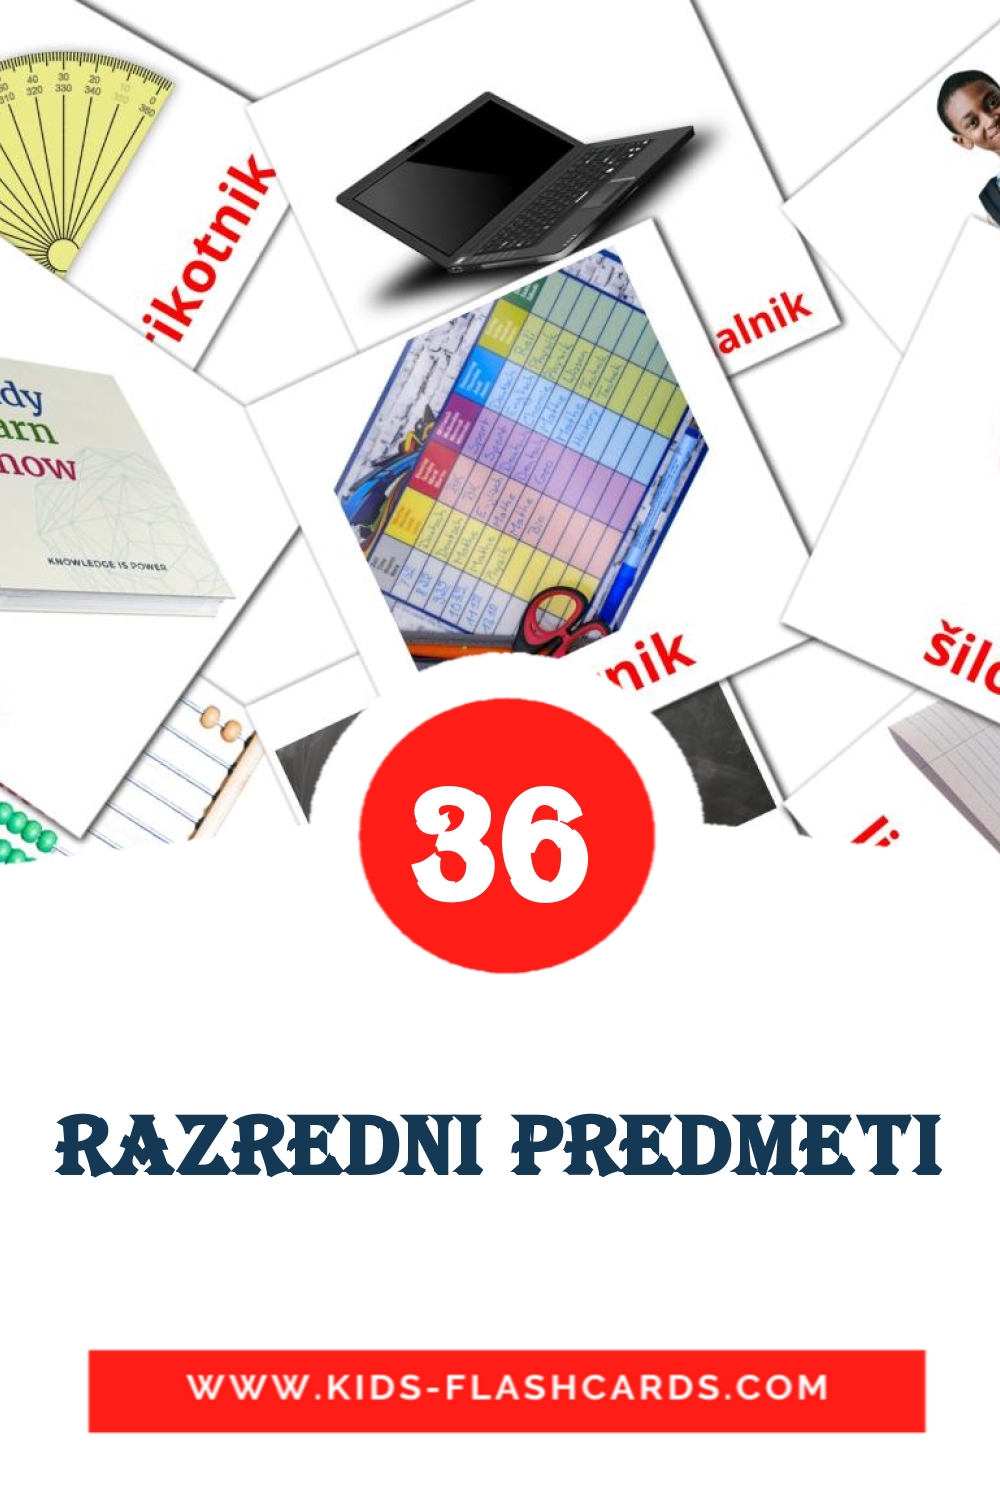 36 tarjetas didacticas de Razredni predmeti para el jardín de infancia en esloveno